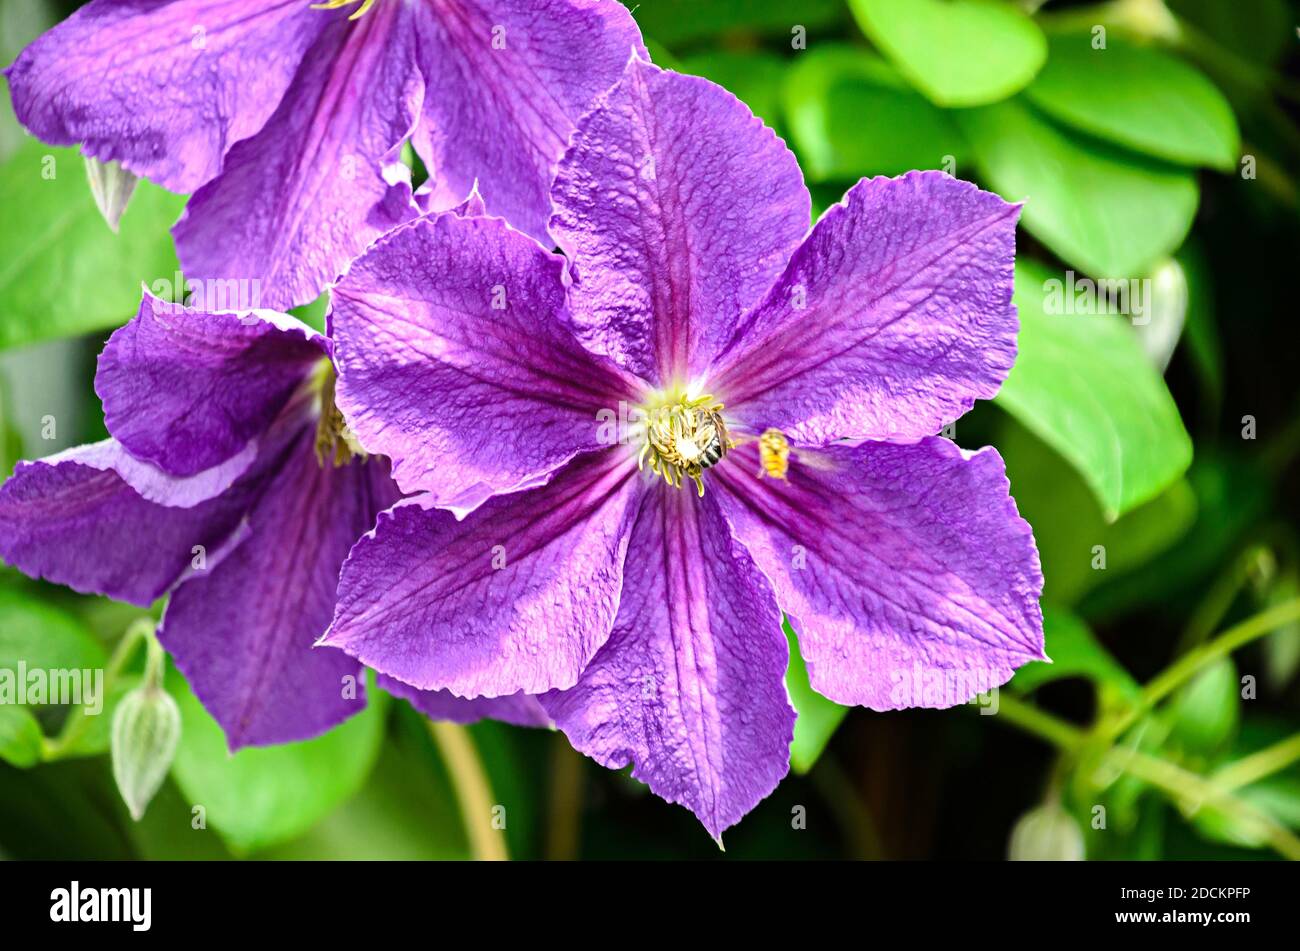 Clematis fiore violaceo, Regina degli scalatori, isolata, vicino. Foto Stock